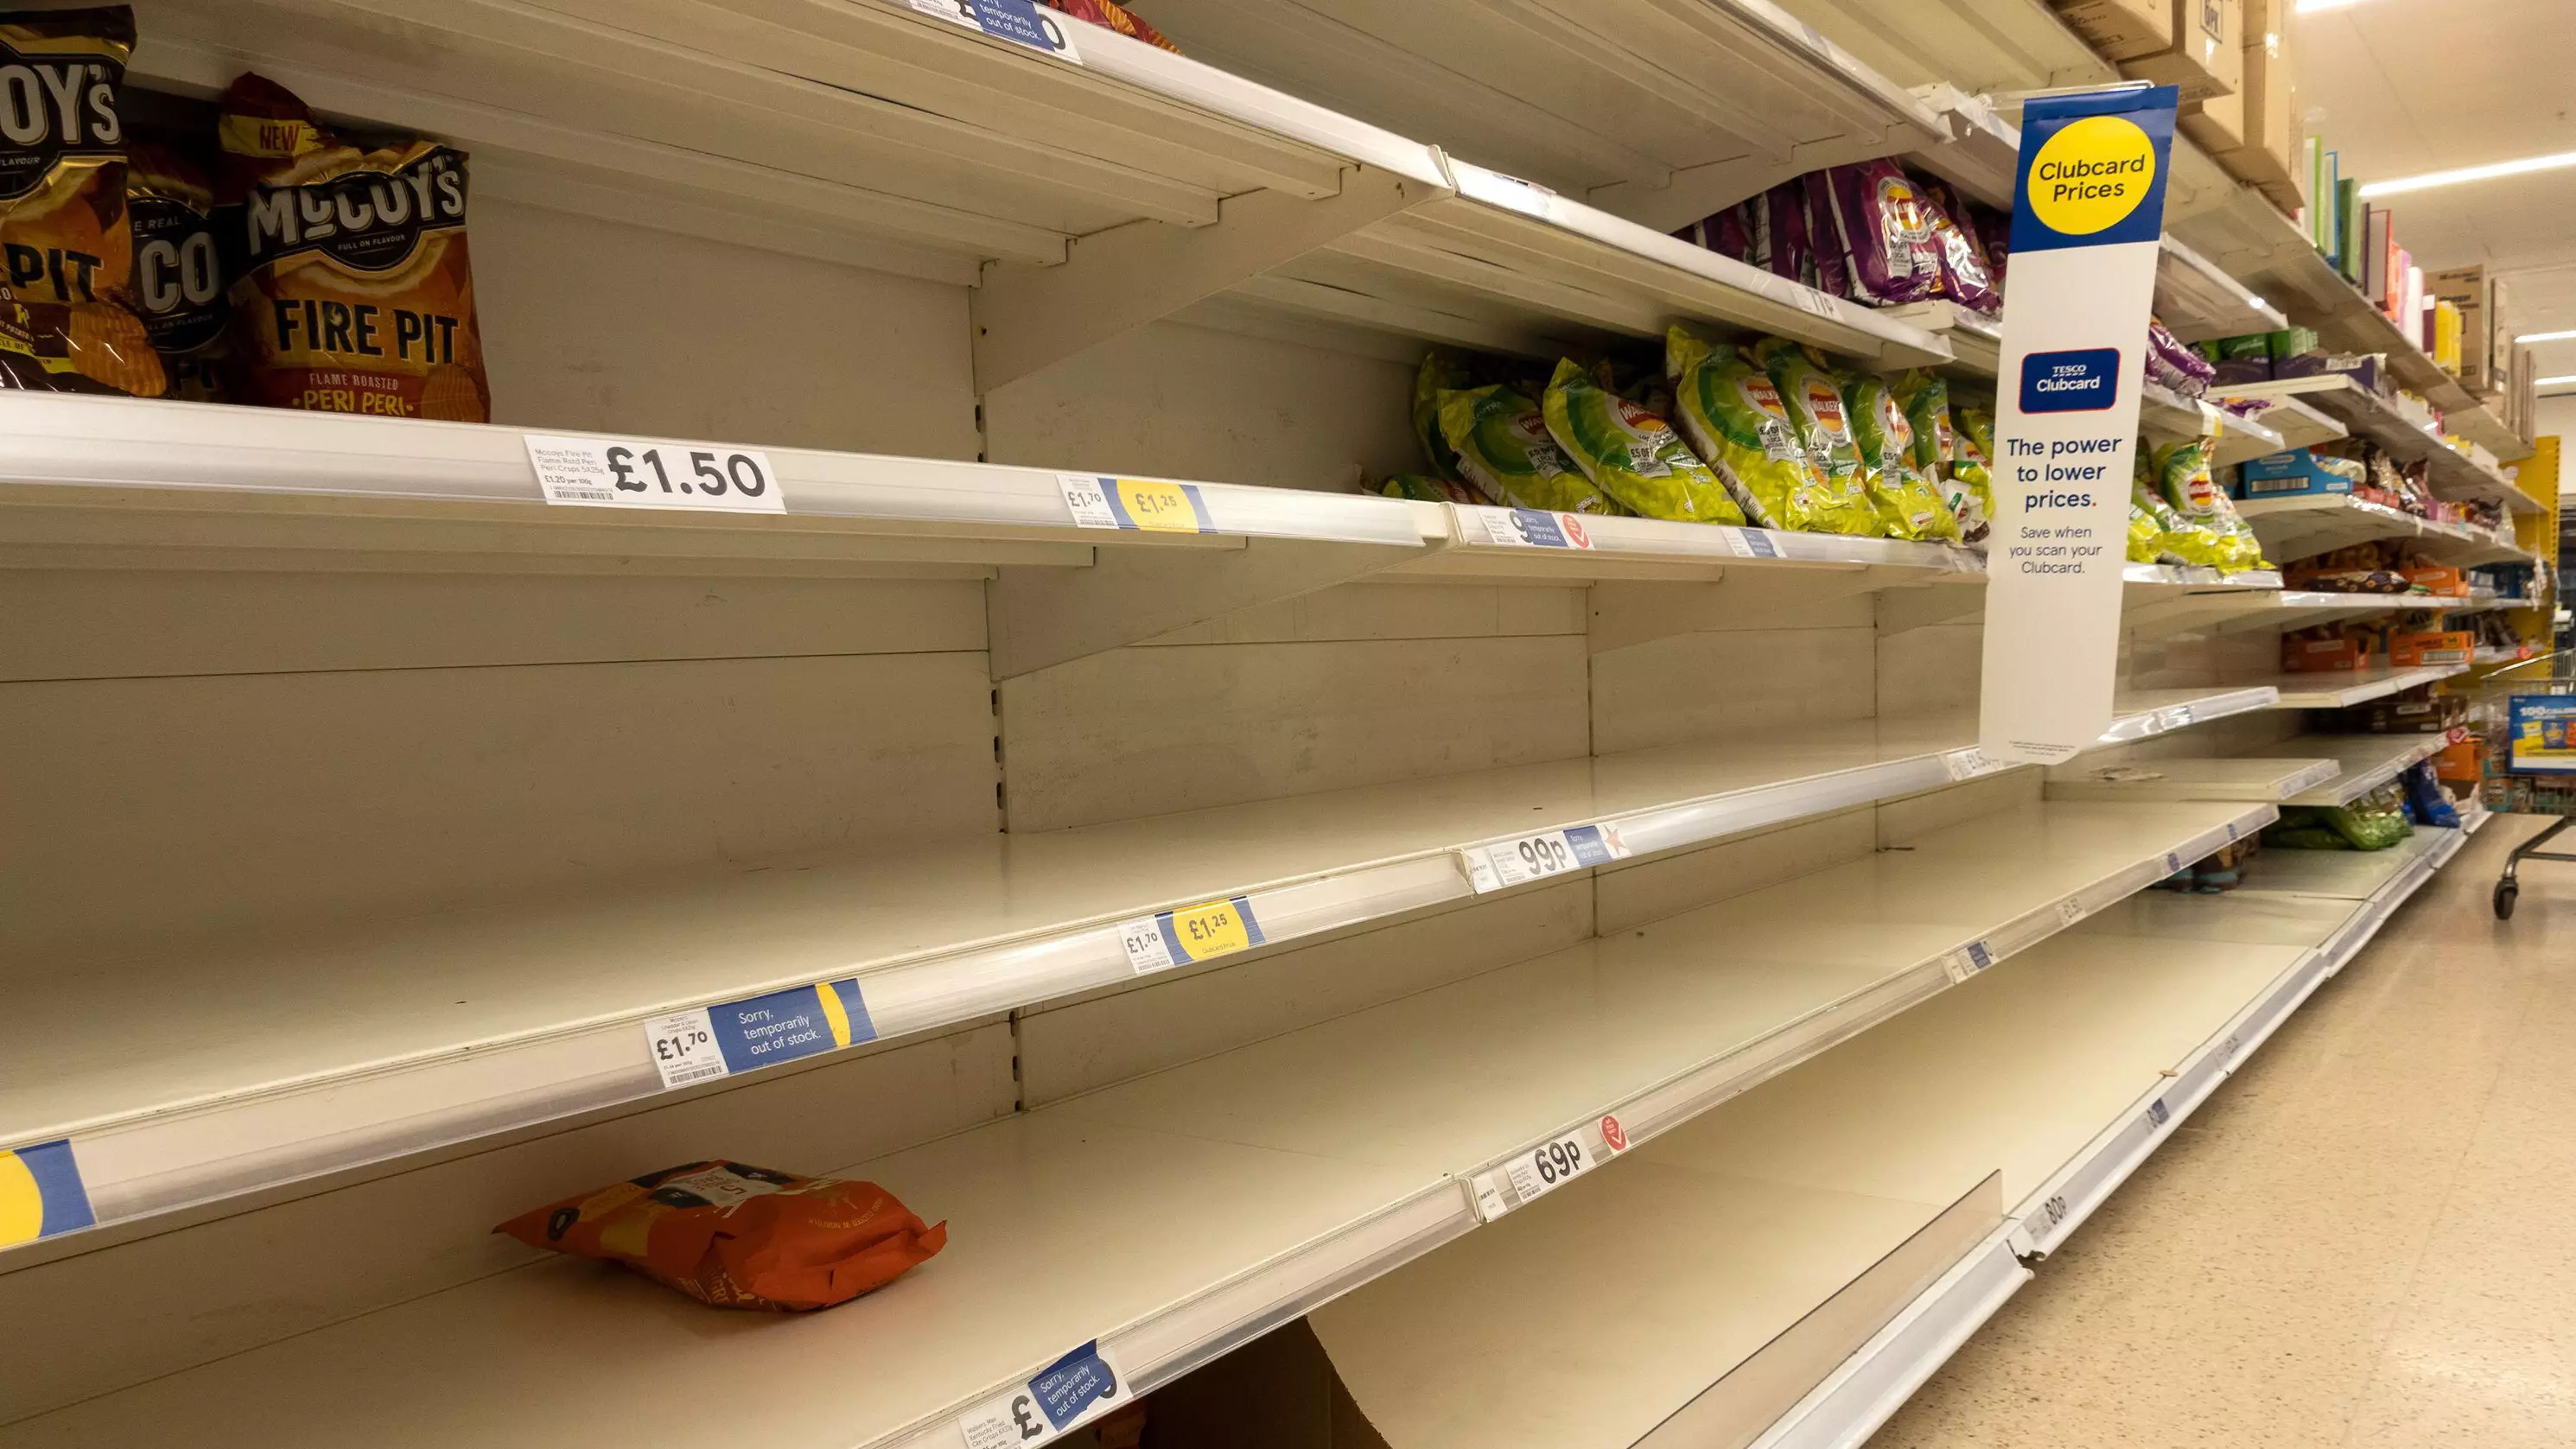 Shortage Of Walkers Crisps Leaves Supermarket Shelves Bare